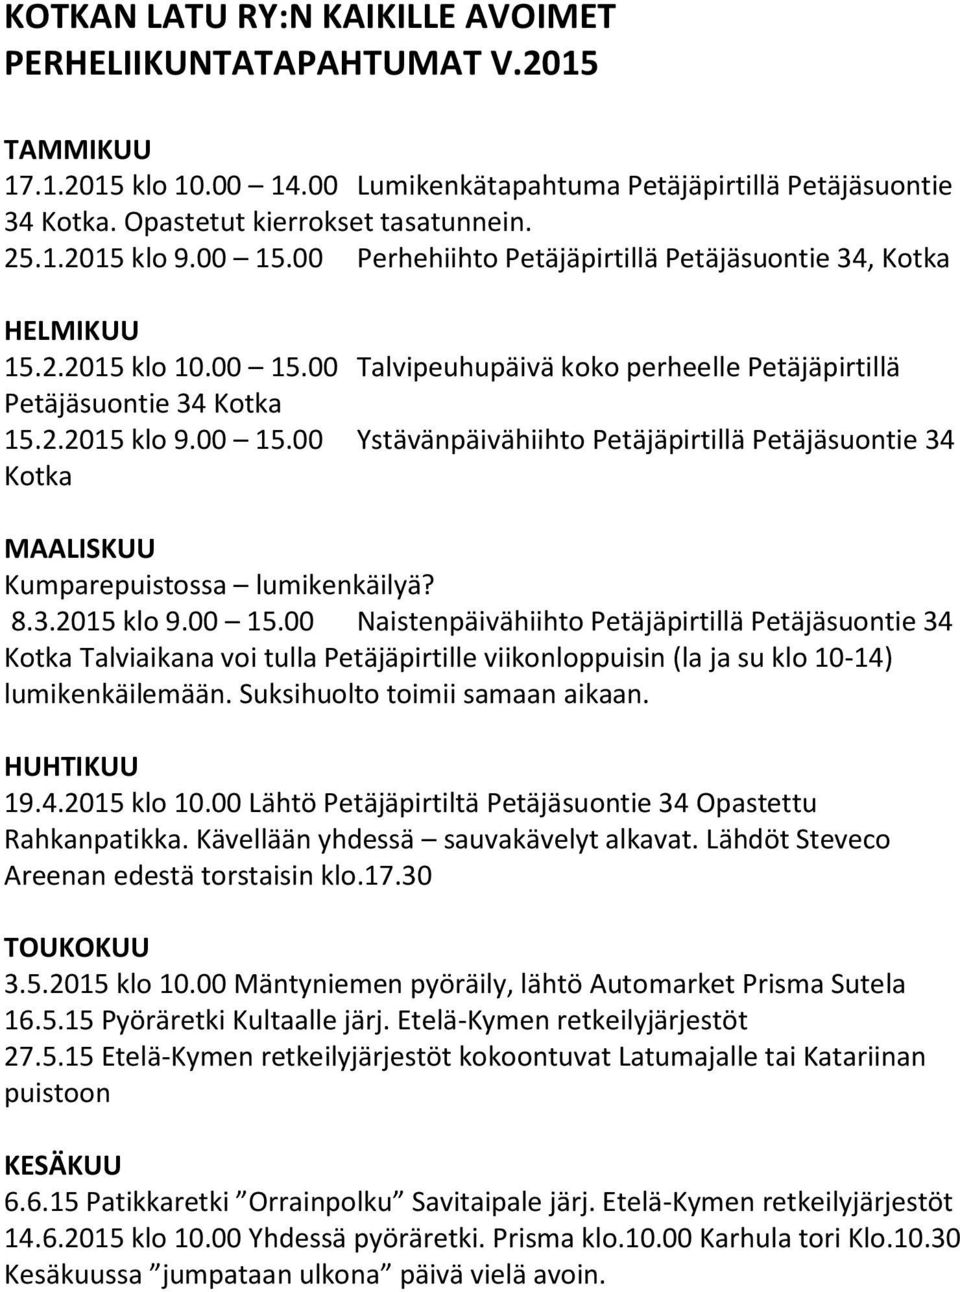 8.3.2015 klo 9.00 15.00 Naistenpäivähiihto Petäjäpirtillä Petäjäsuontie 34 Kotka Talviaikana voi tulla Petäjäpirtille viikonloppuisin (la ja su klo 10-14) lumikenkäilemään.